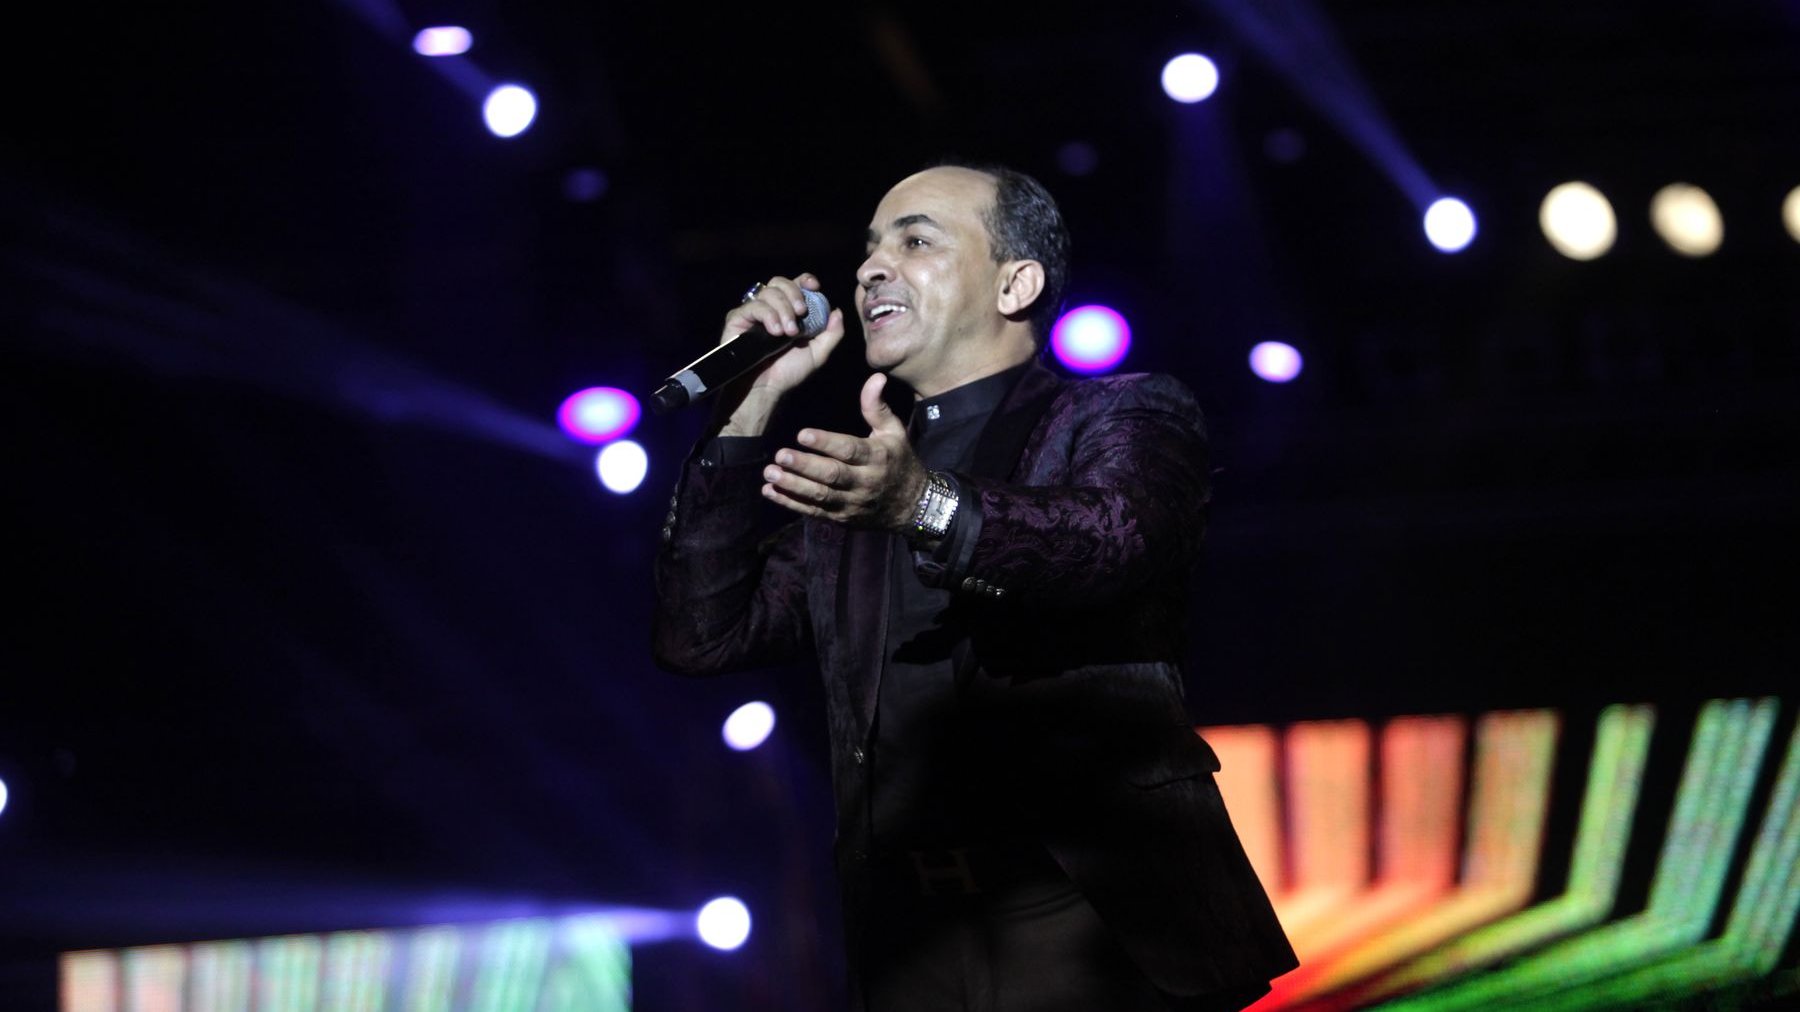 Il faut dire que les airs entraînants de Abdelmoughit ne laissent personne indifférent. Les morceaux du chanteur font danser toutes les générations!  
